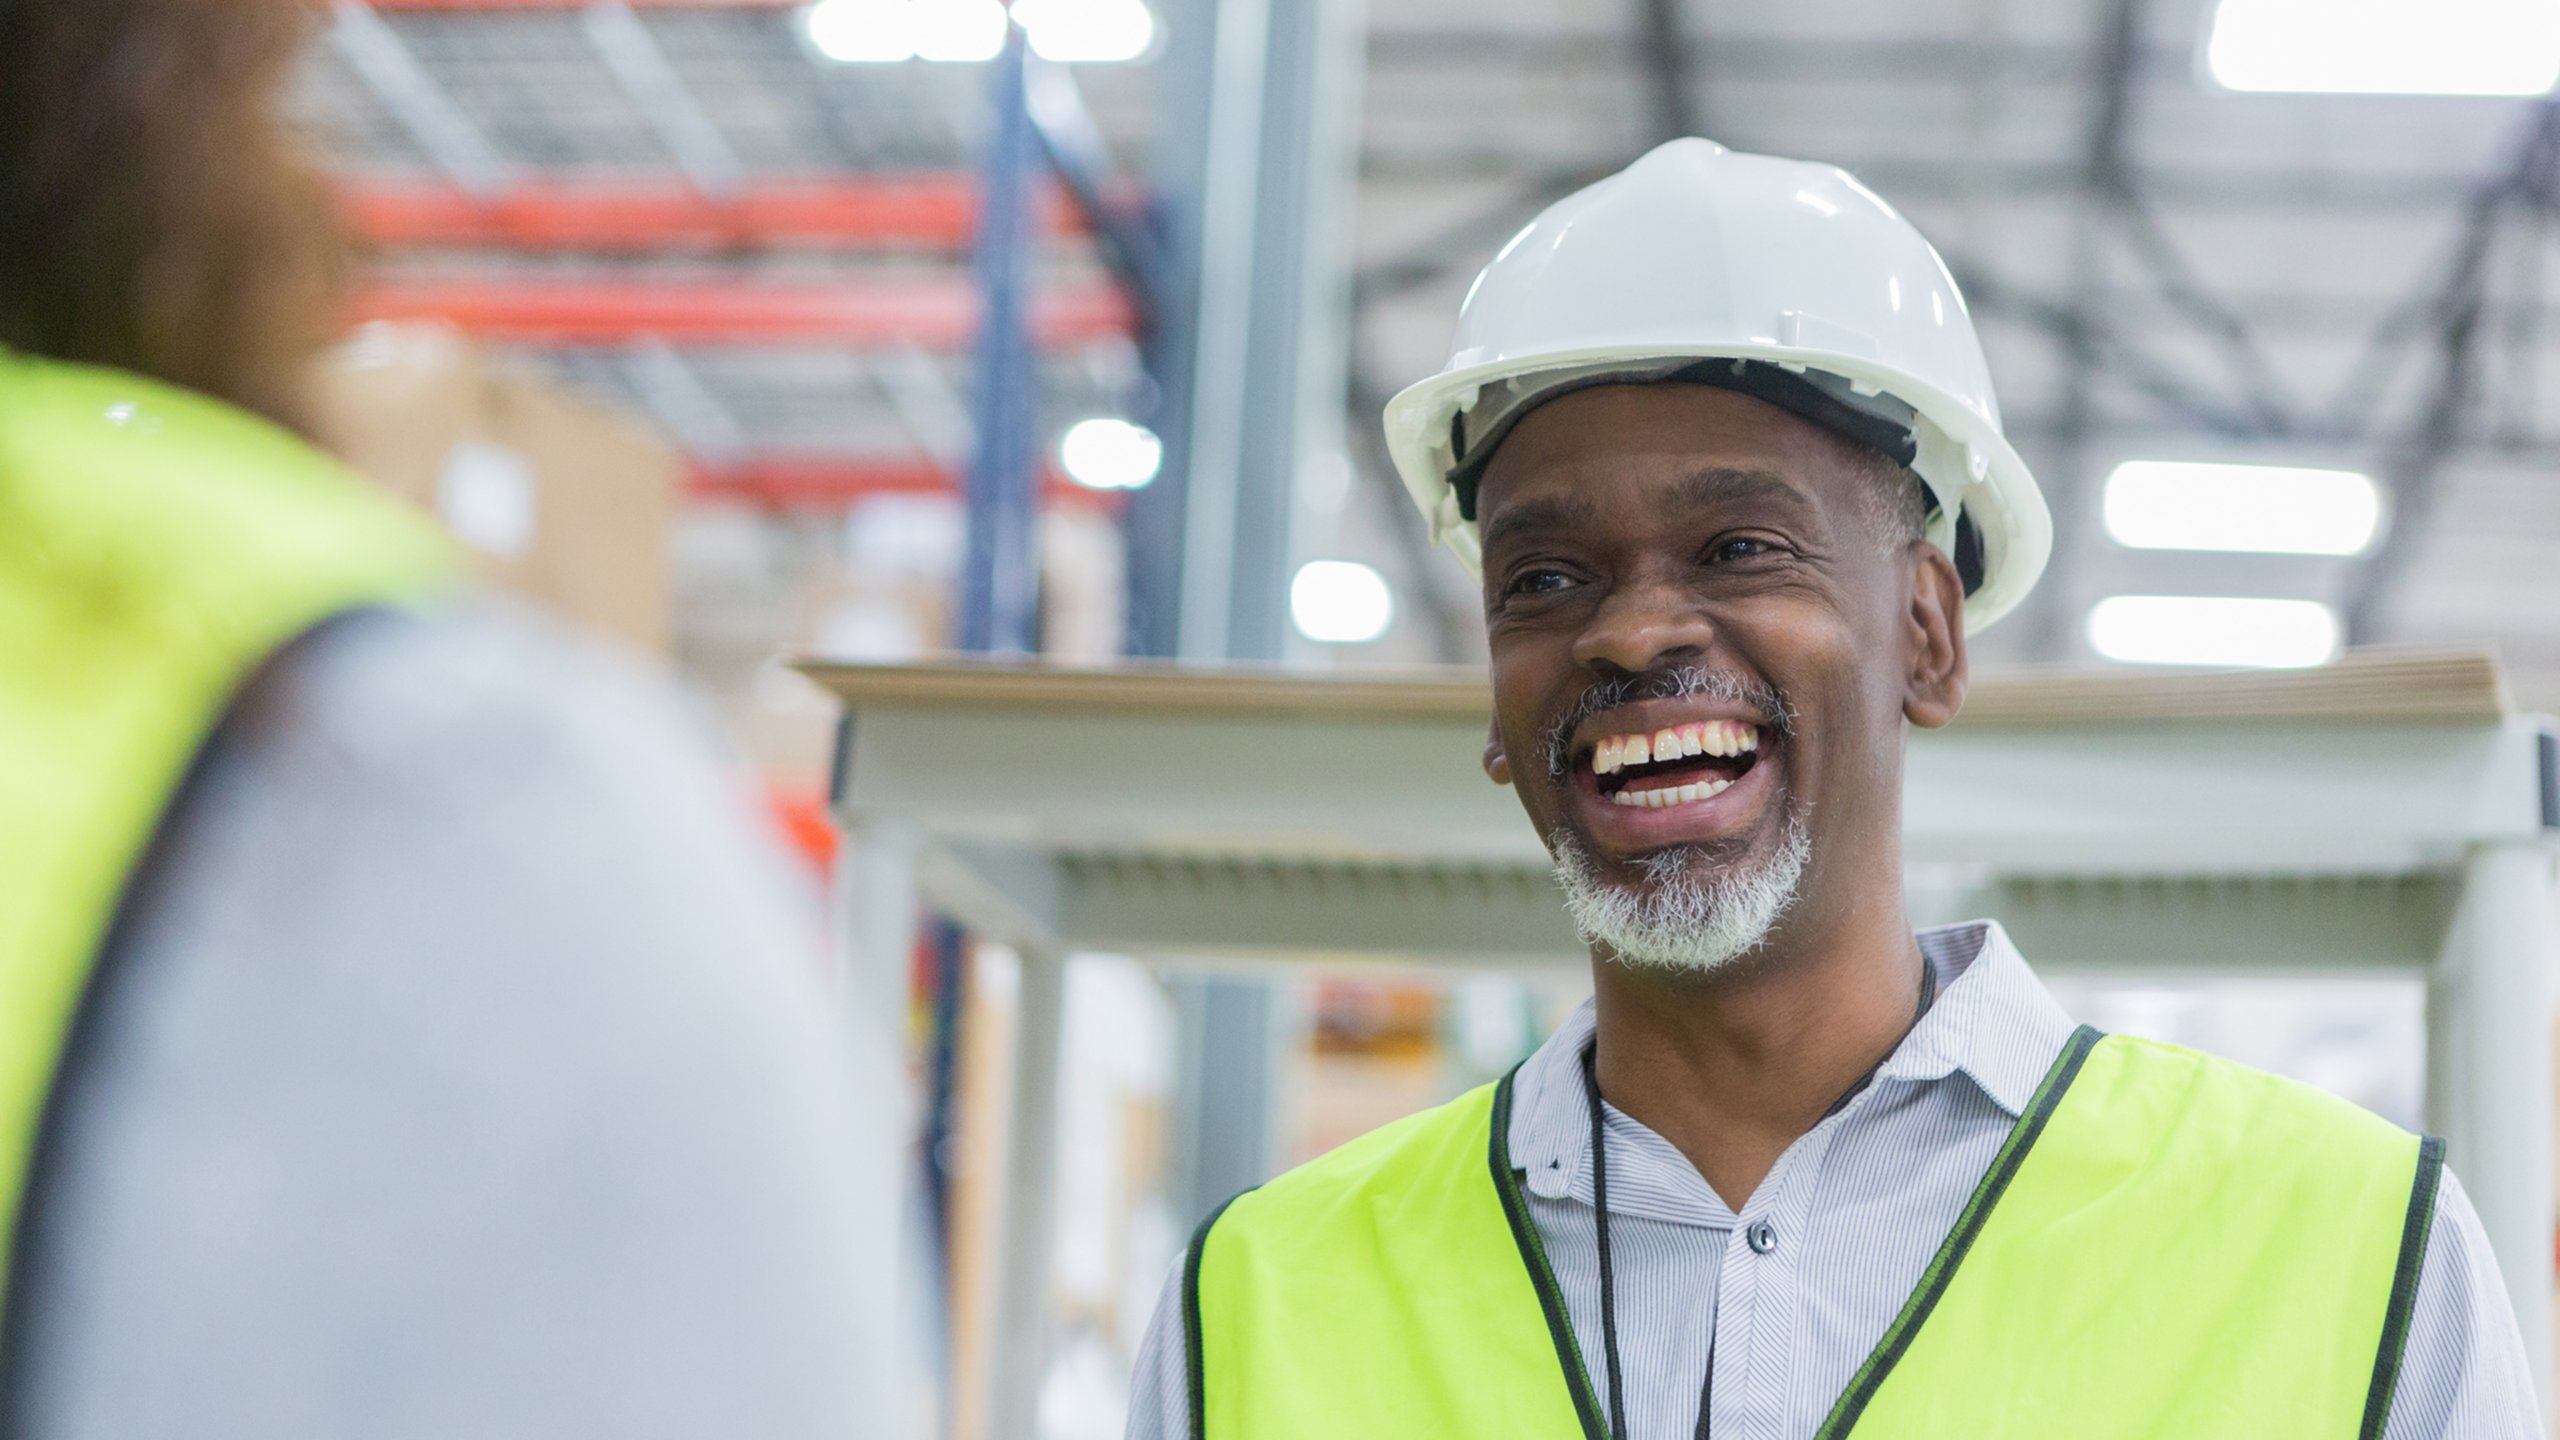 Trabalhador sorridente usando um colete de segurança amarelo e um capacete branco em uma fábrica